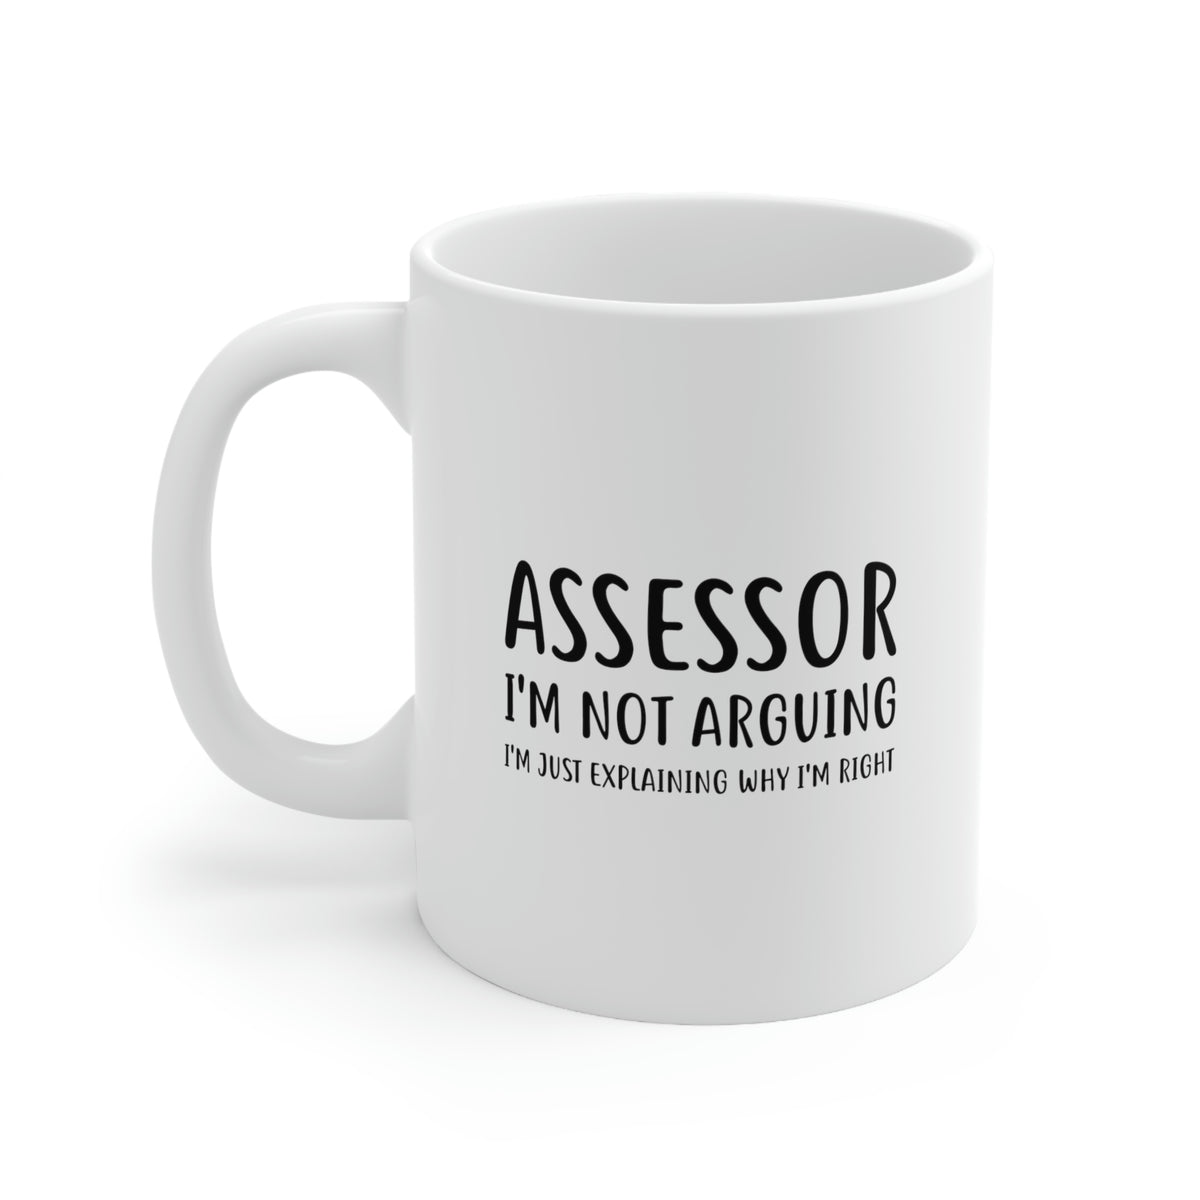 Funny Assessor 11oz Coffee Mug - I'm not arguing - Unique Inspirational Sarcasm Gift